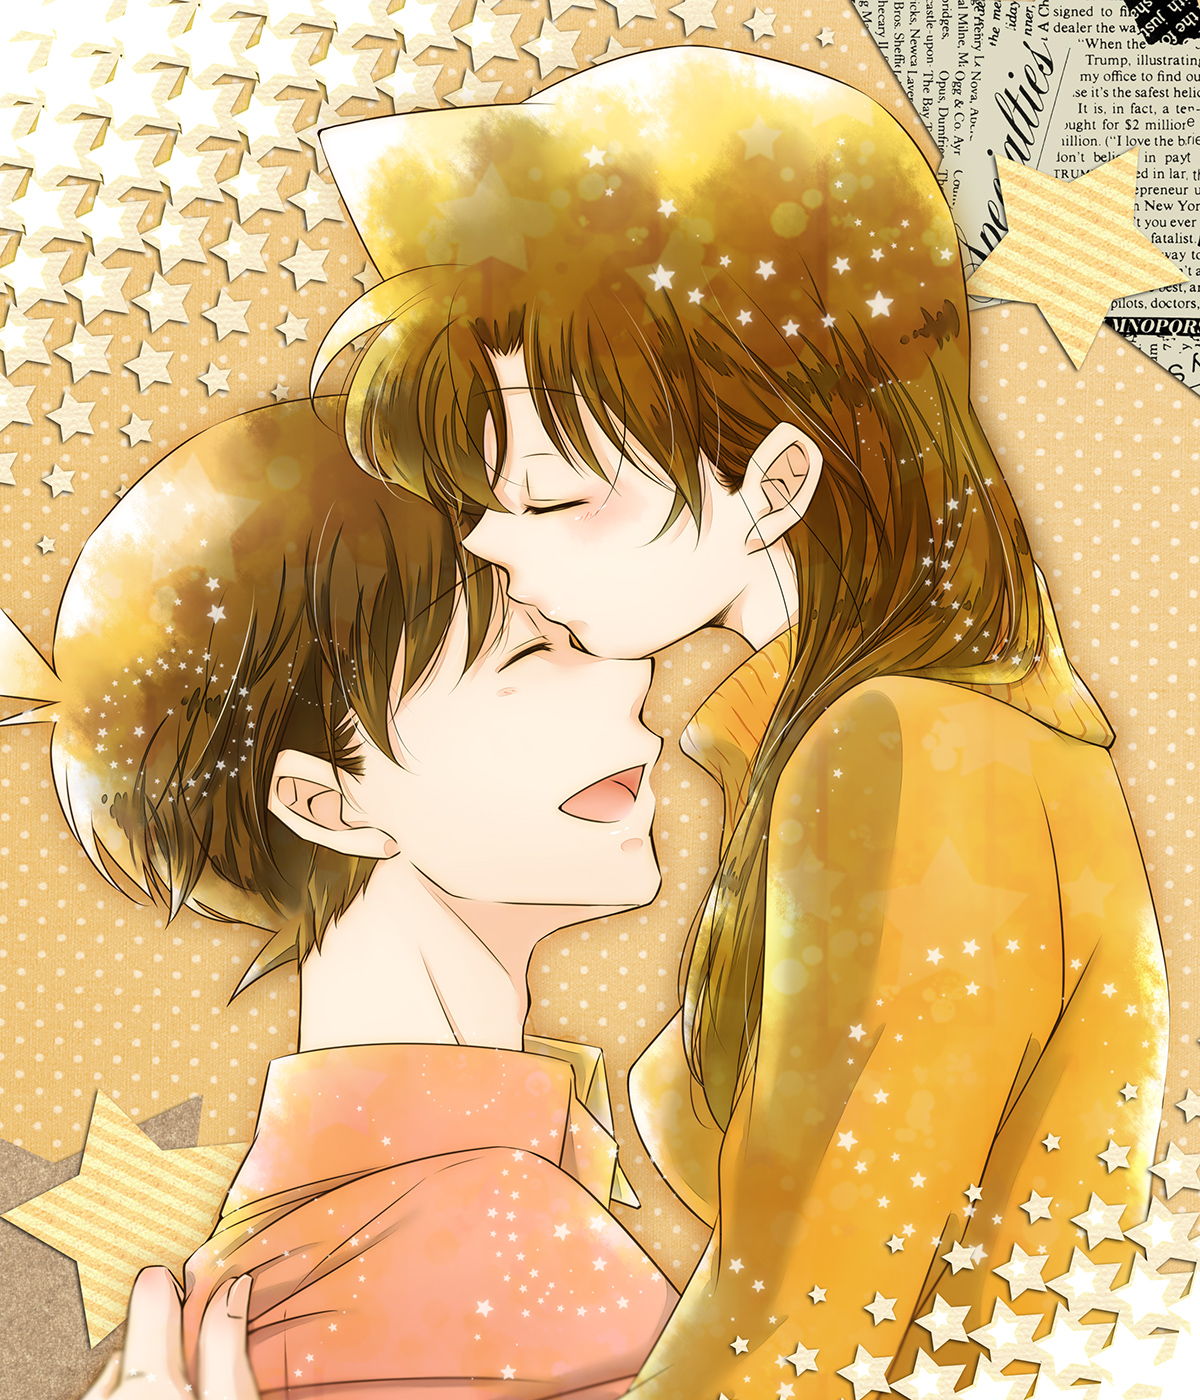 Hình ảnh Ran và Shinichi hôn nhau cực hạnh phúc